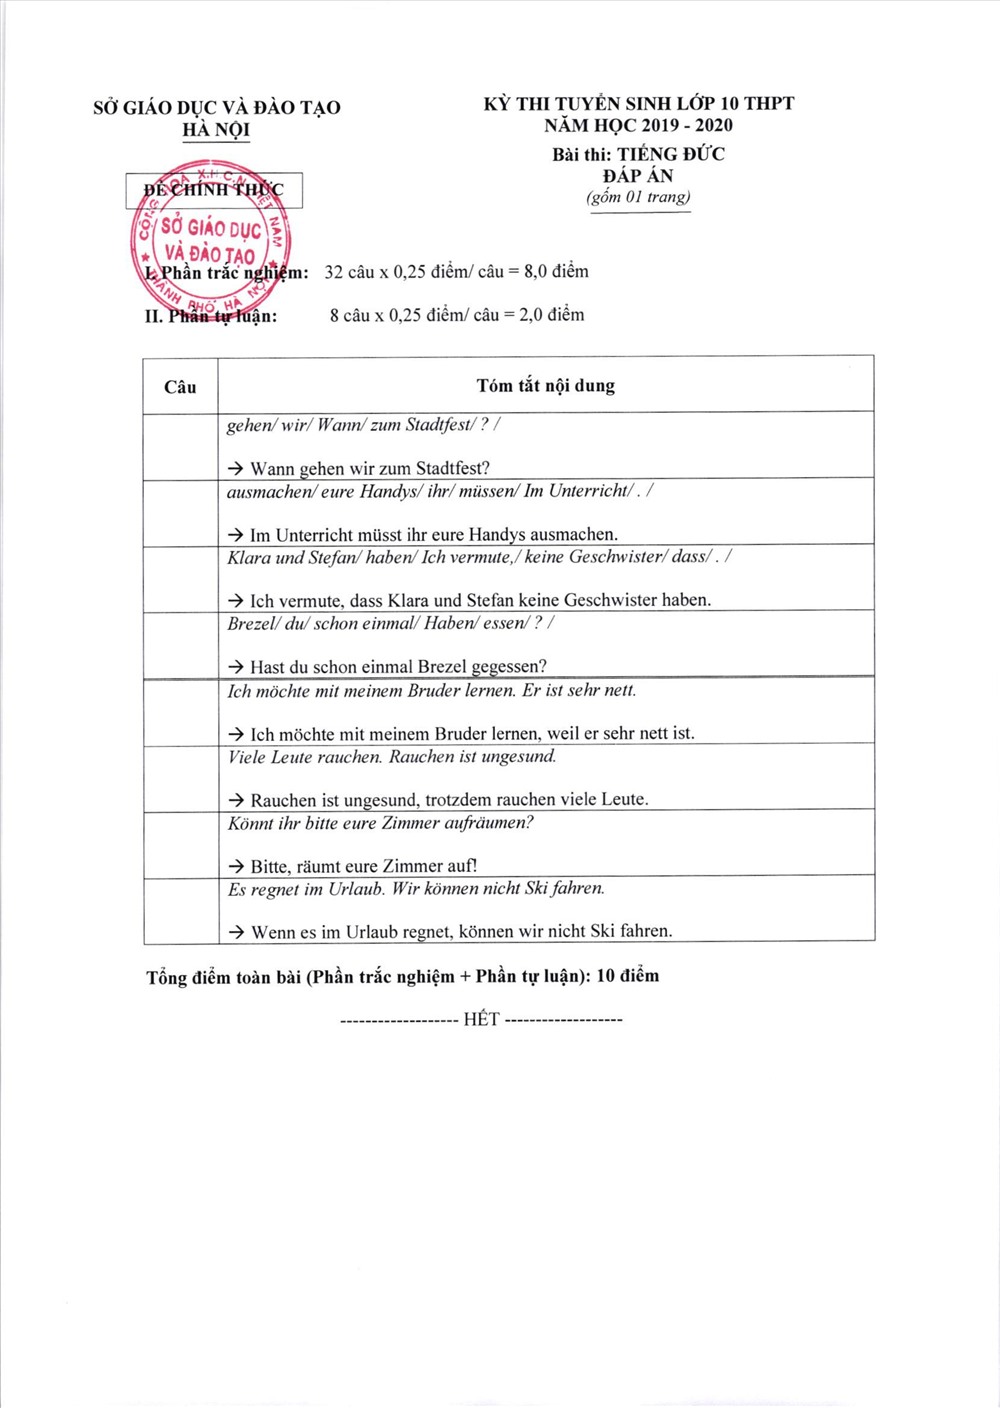 Đáp án phần tự luận môn Tiếng Đức vào lớp 10 tại Hà Nội.